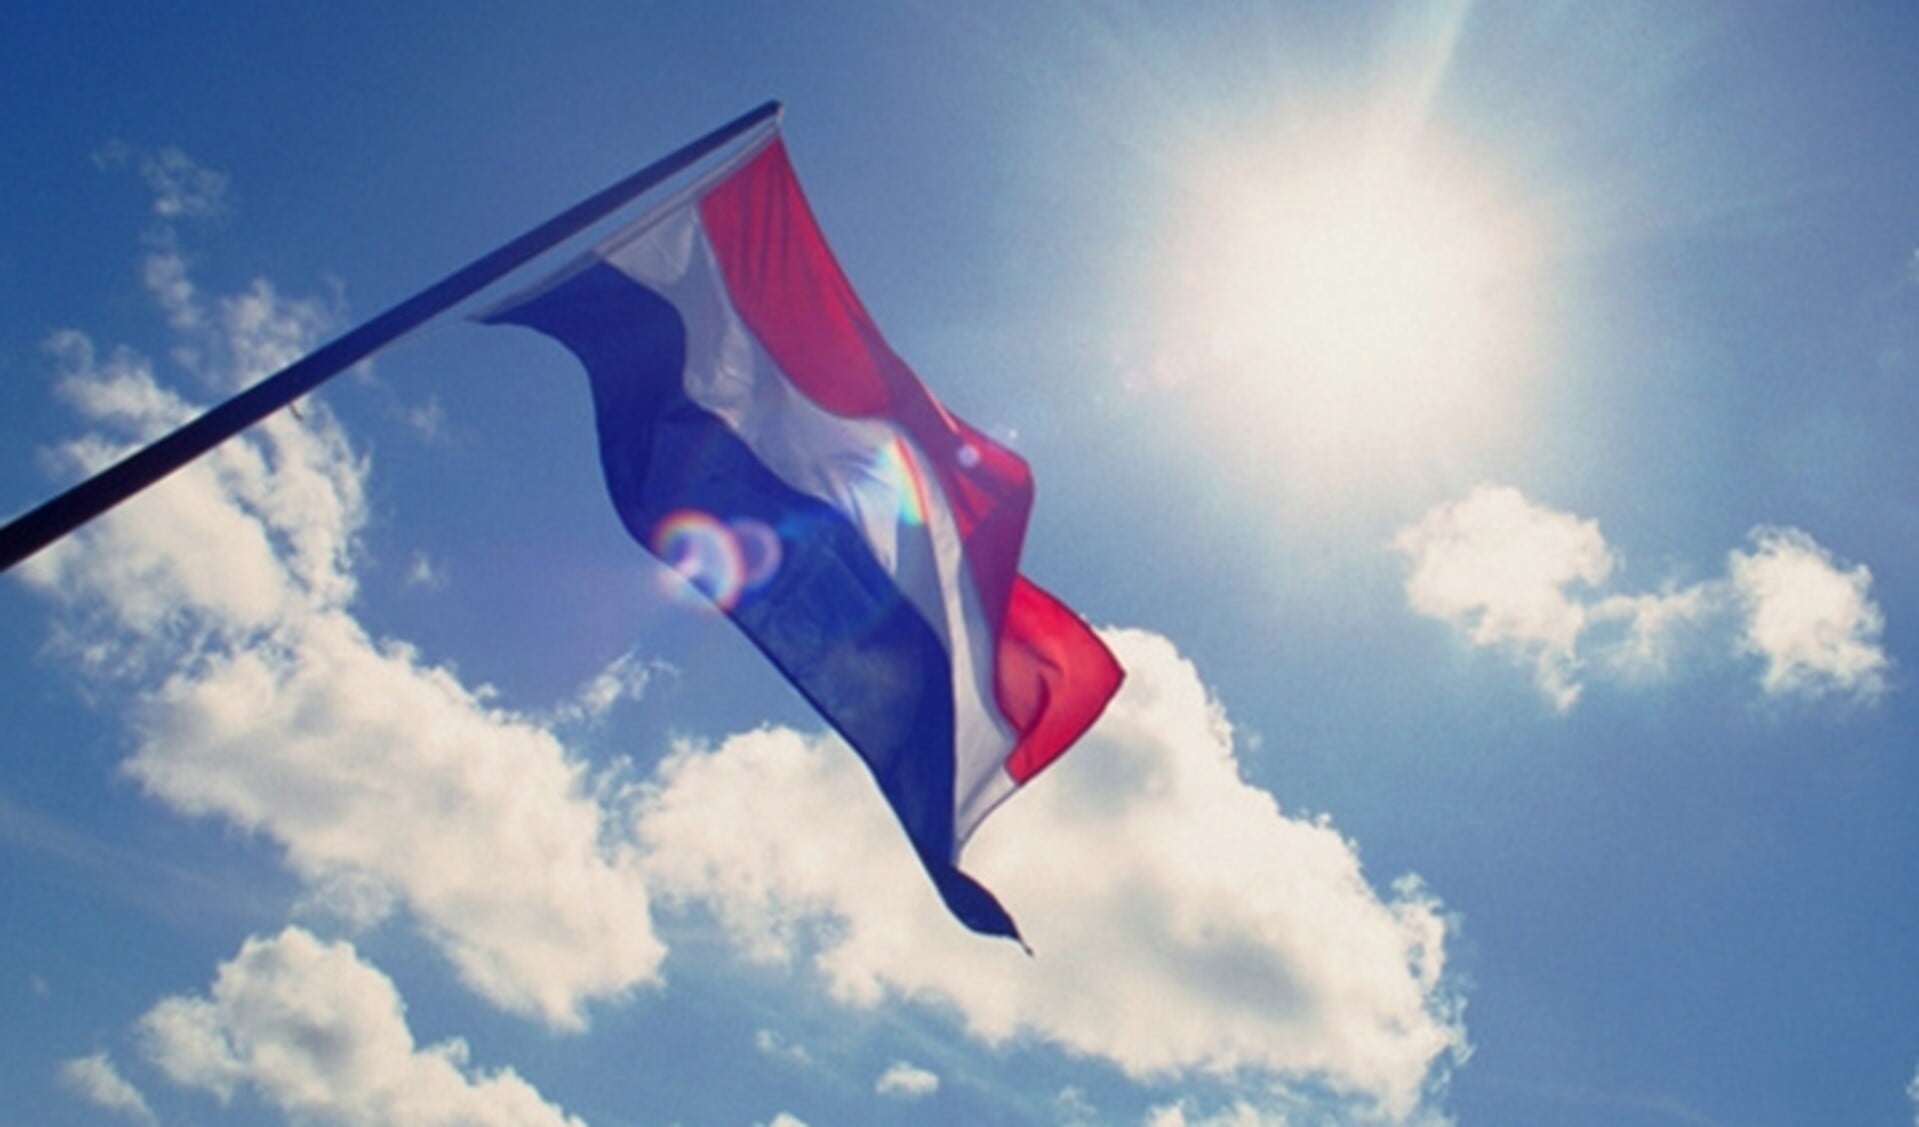 De Nederlandse vlag en Huizer vlag sieren straks de raadszaal tijdens raadsvergaderingen.